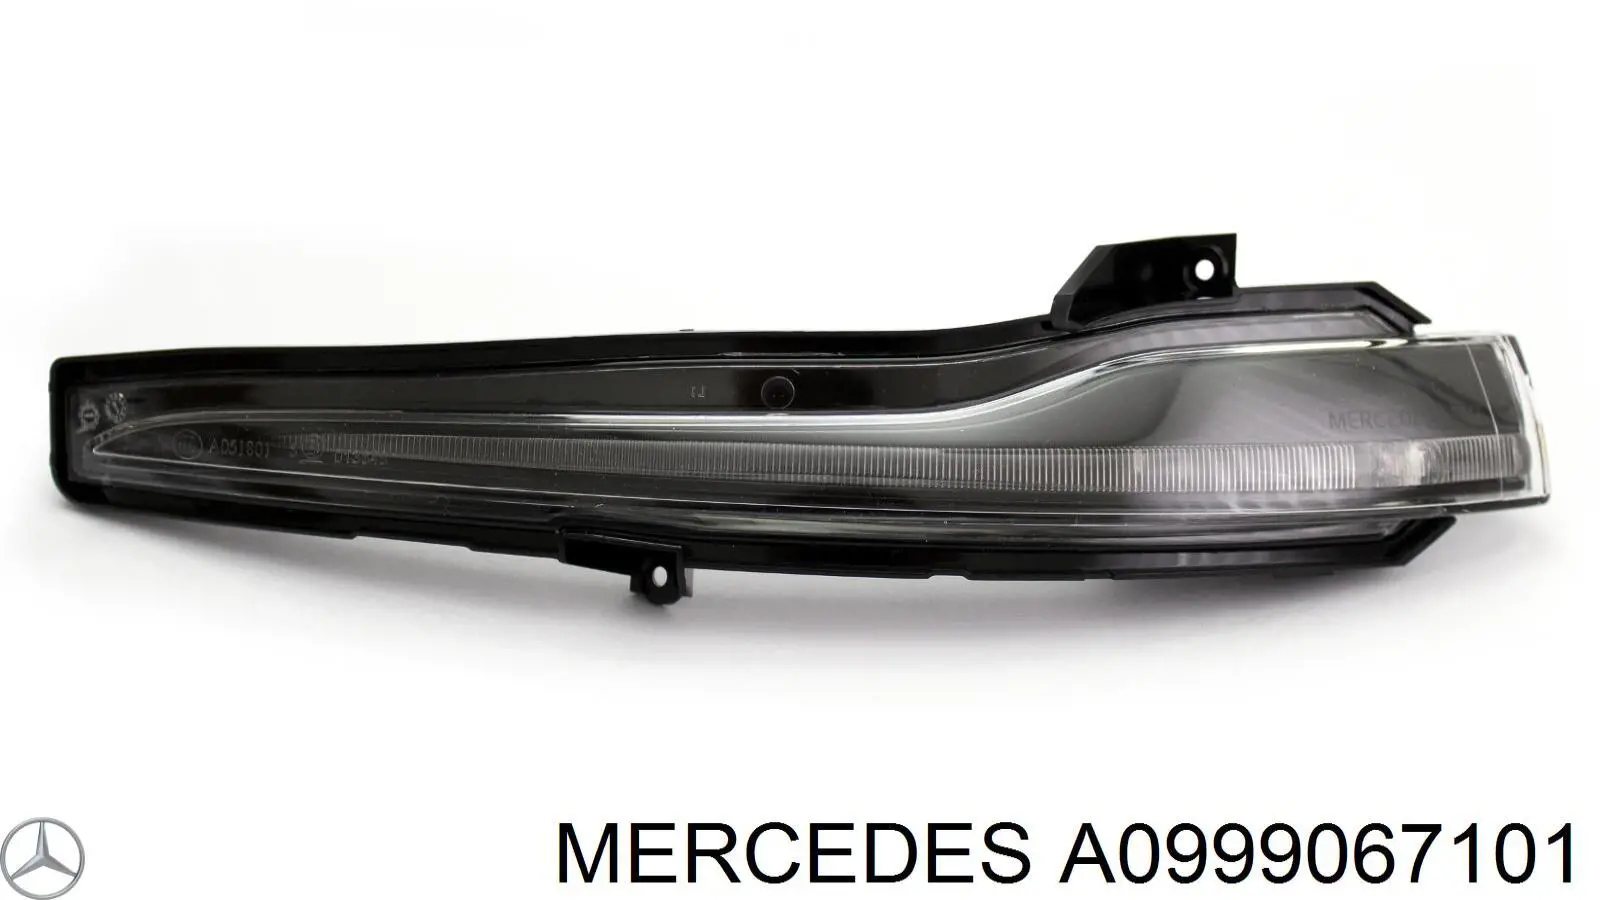 A0999067101 Mercedes pisca-pisca de espelho esquerdo